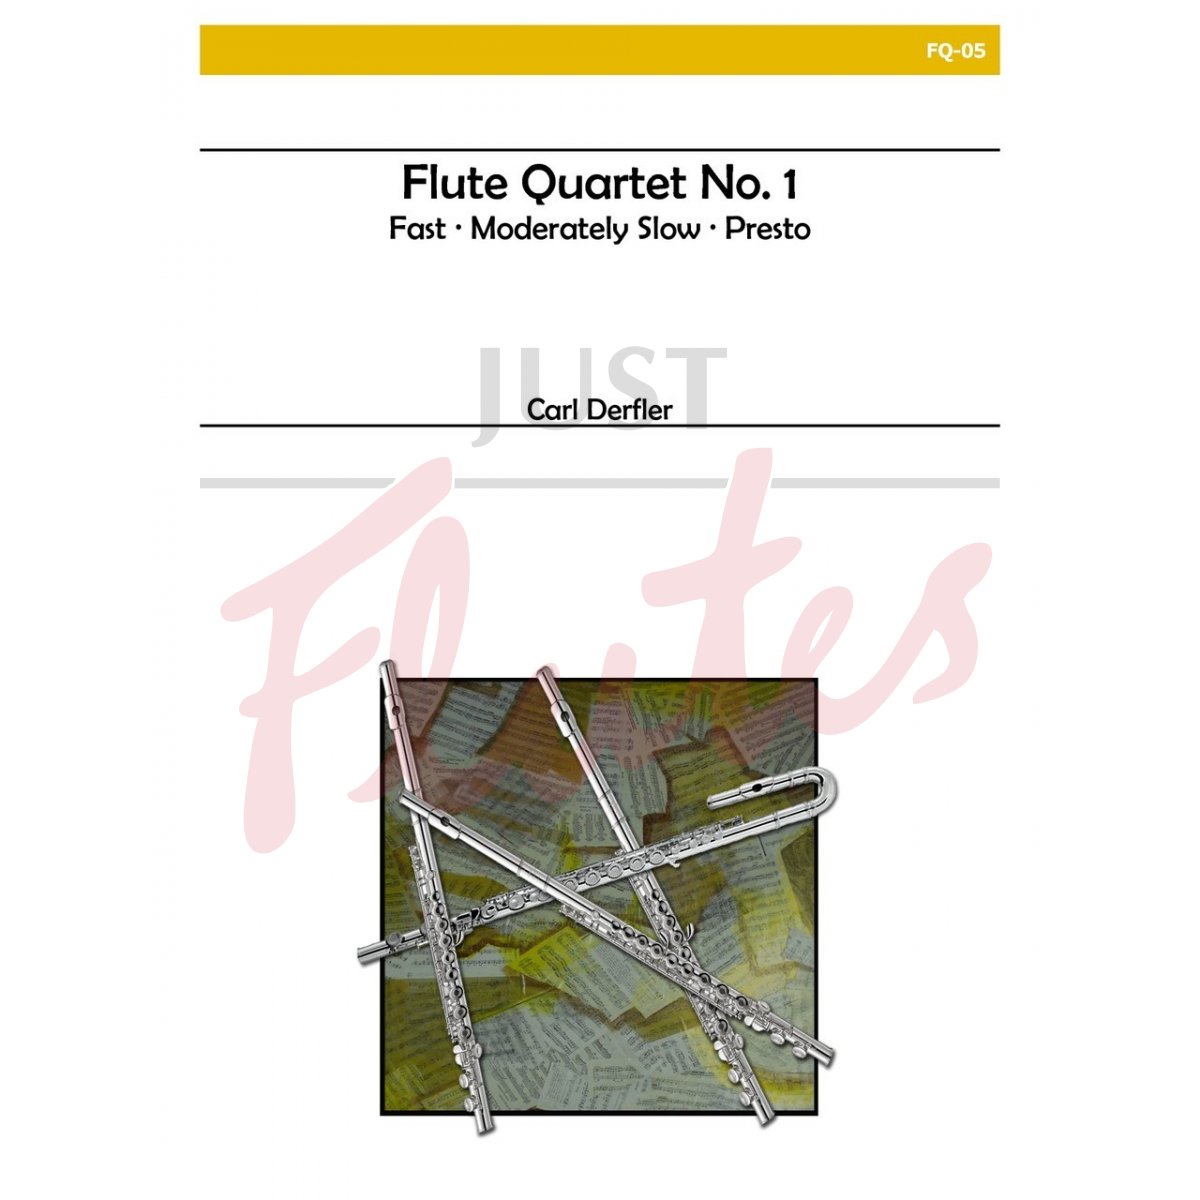 Flute Quartet No 1